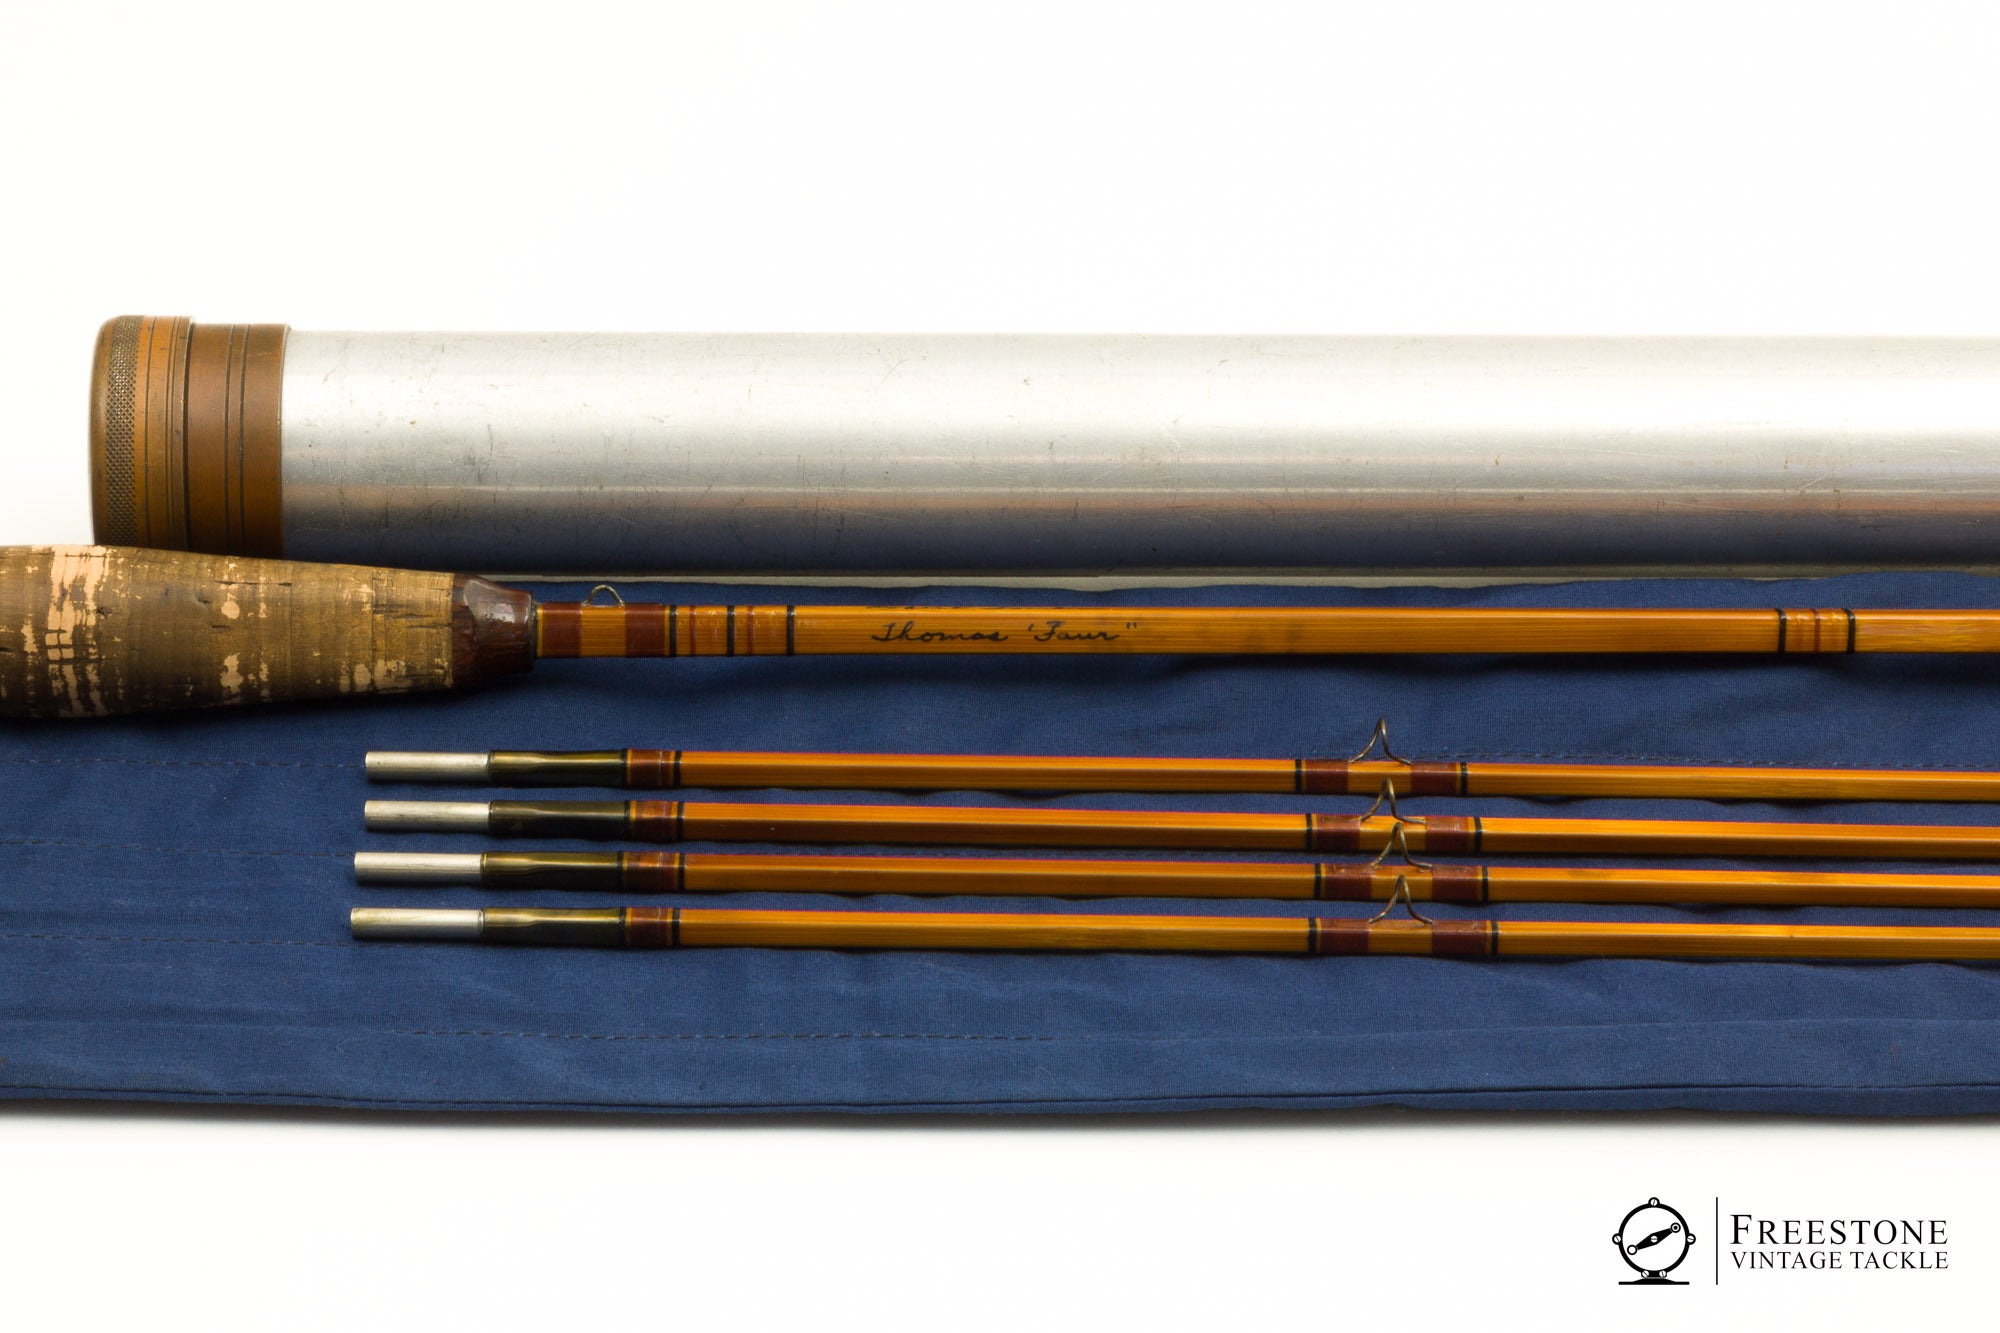 Carlson, C.W. - 6'6" 2/4 4wt Quad Bamboo Rod